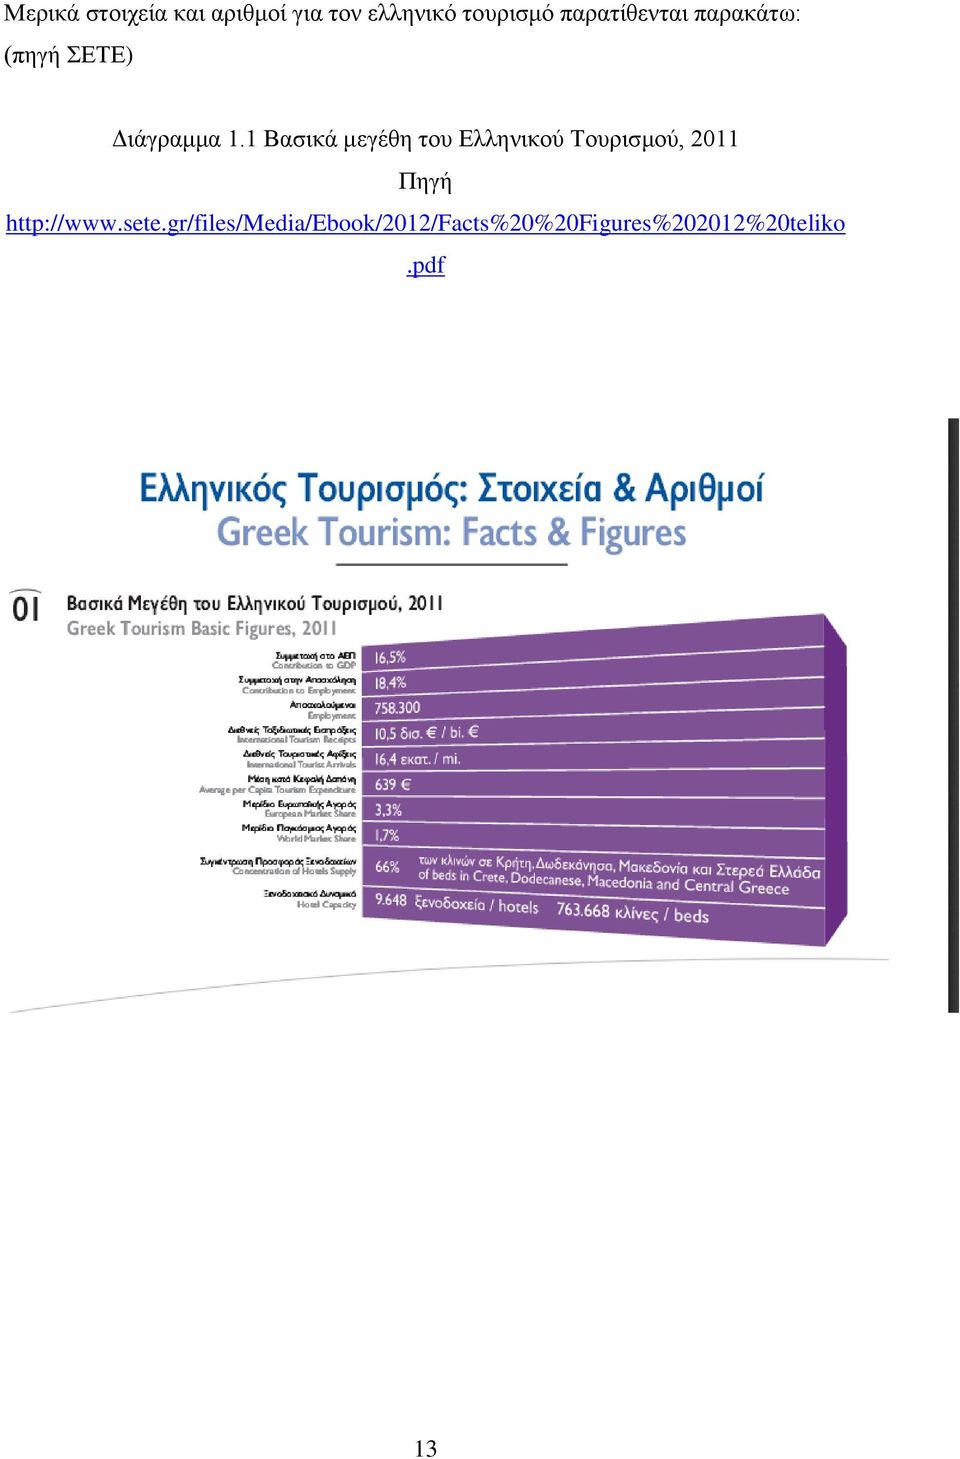 1 Βασικά μεγέθη του Ελληνικού Τουρισμού, 2011 Πηγή